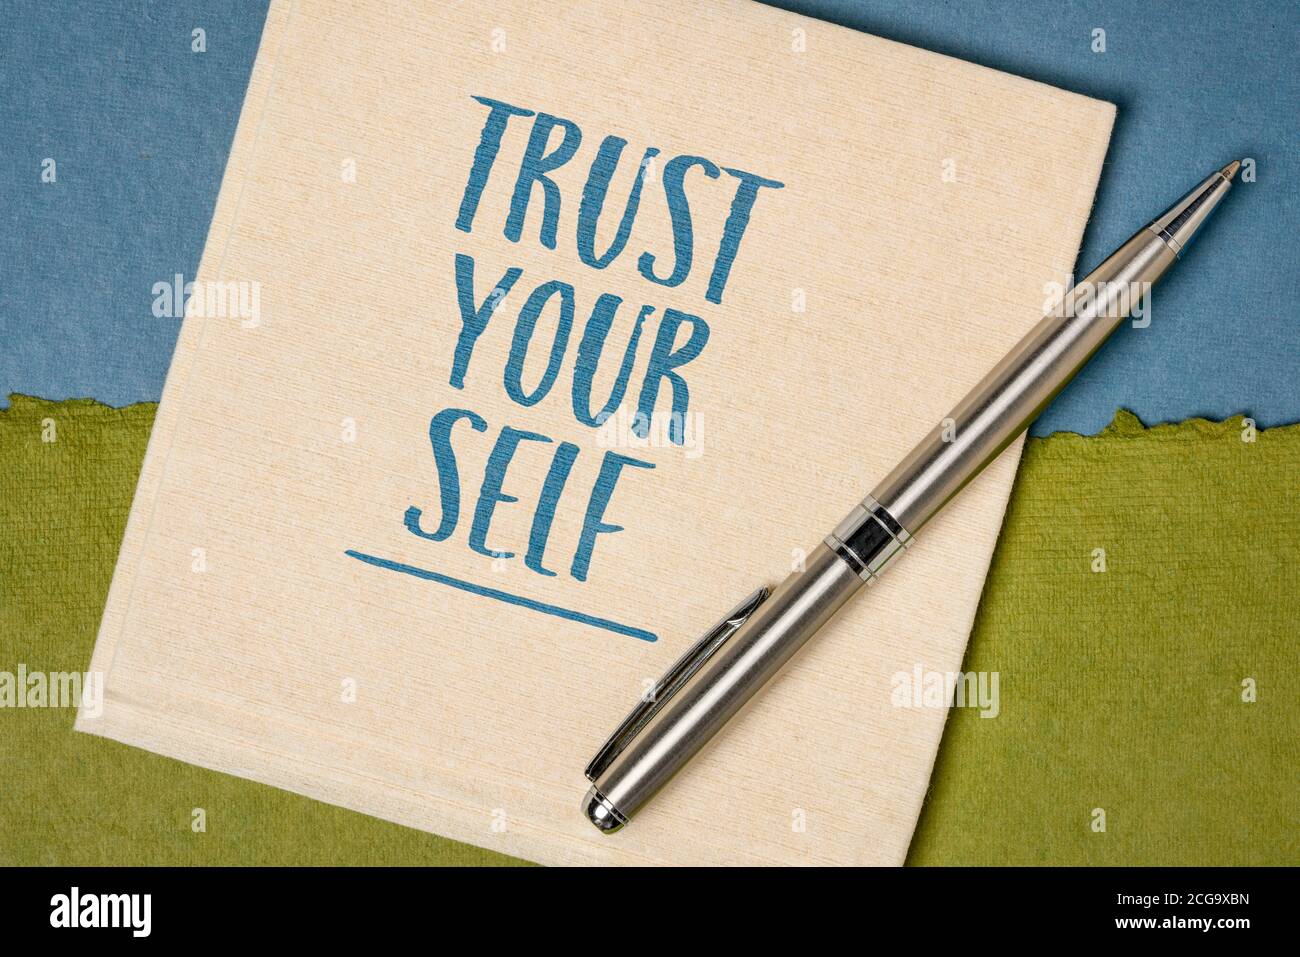 Vertrauen Sie sich Erinnerungsnotiz - Handschrift auf Serviette gegen handgemachtes Stoffpapier, Denkweise, Selbstvertrauen und persönliches Entwicklungskonzept Stockfoto